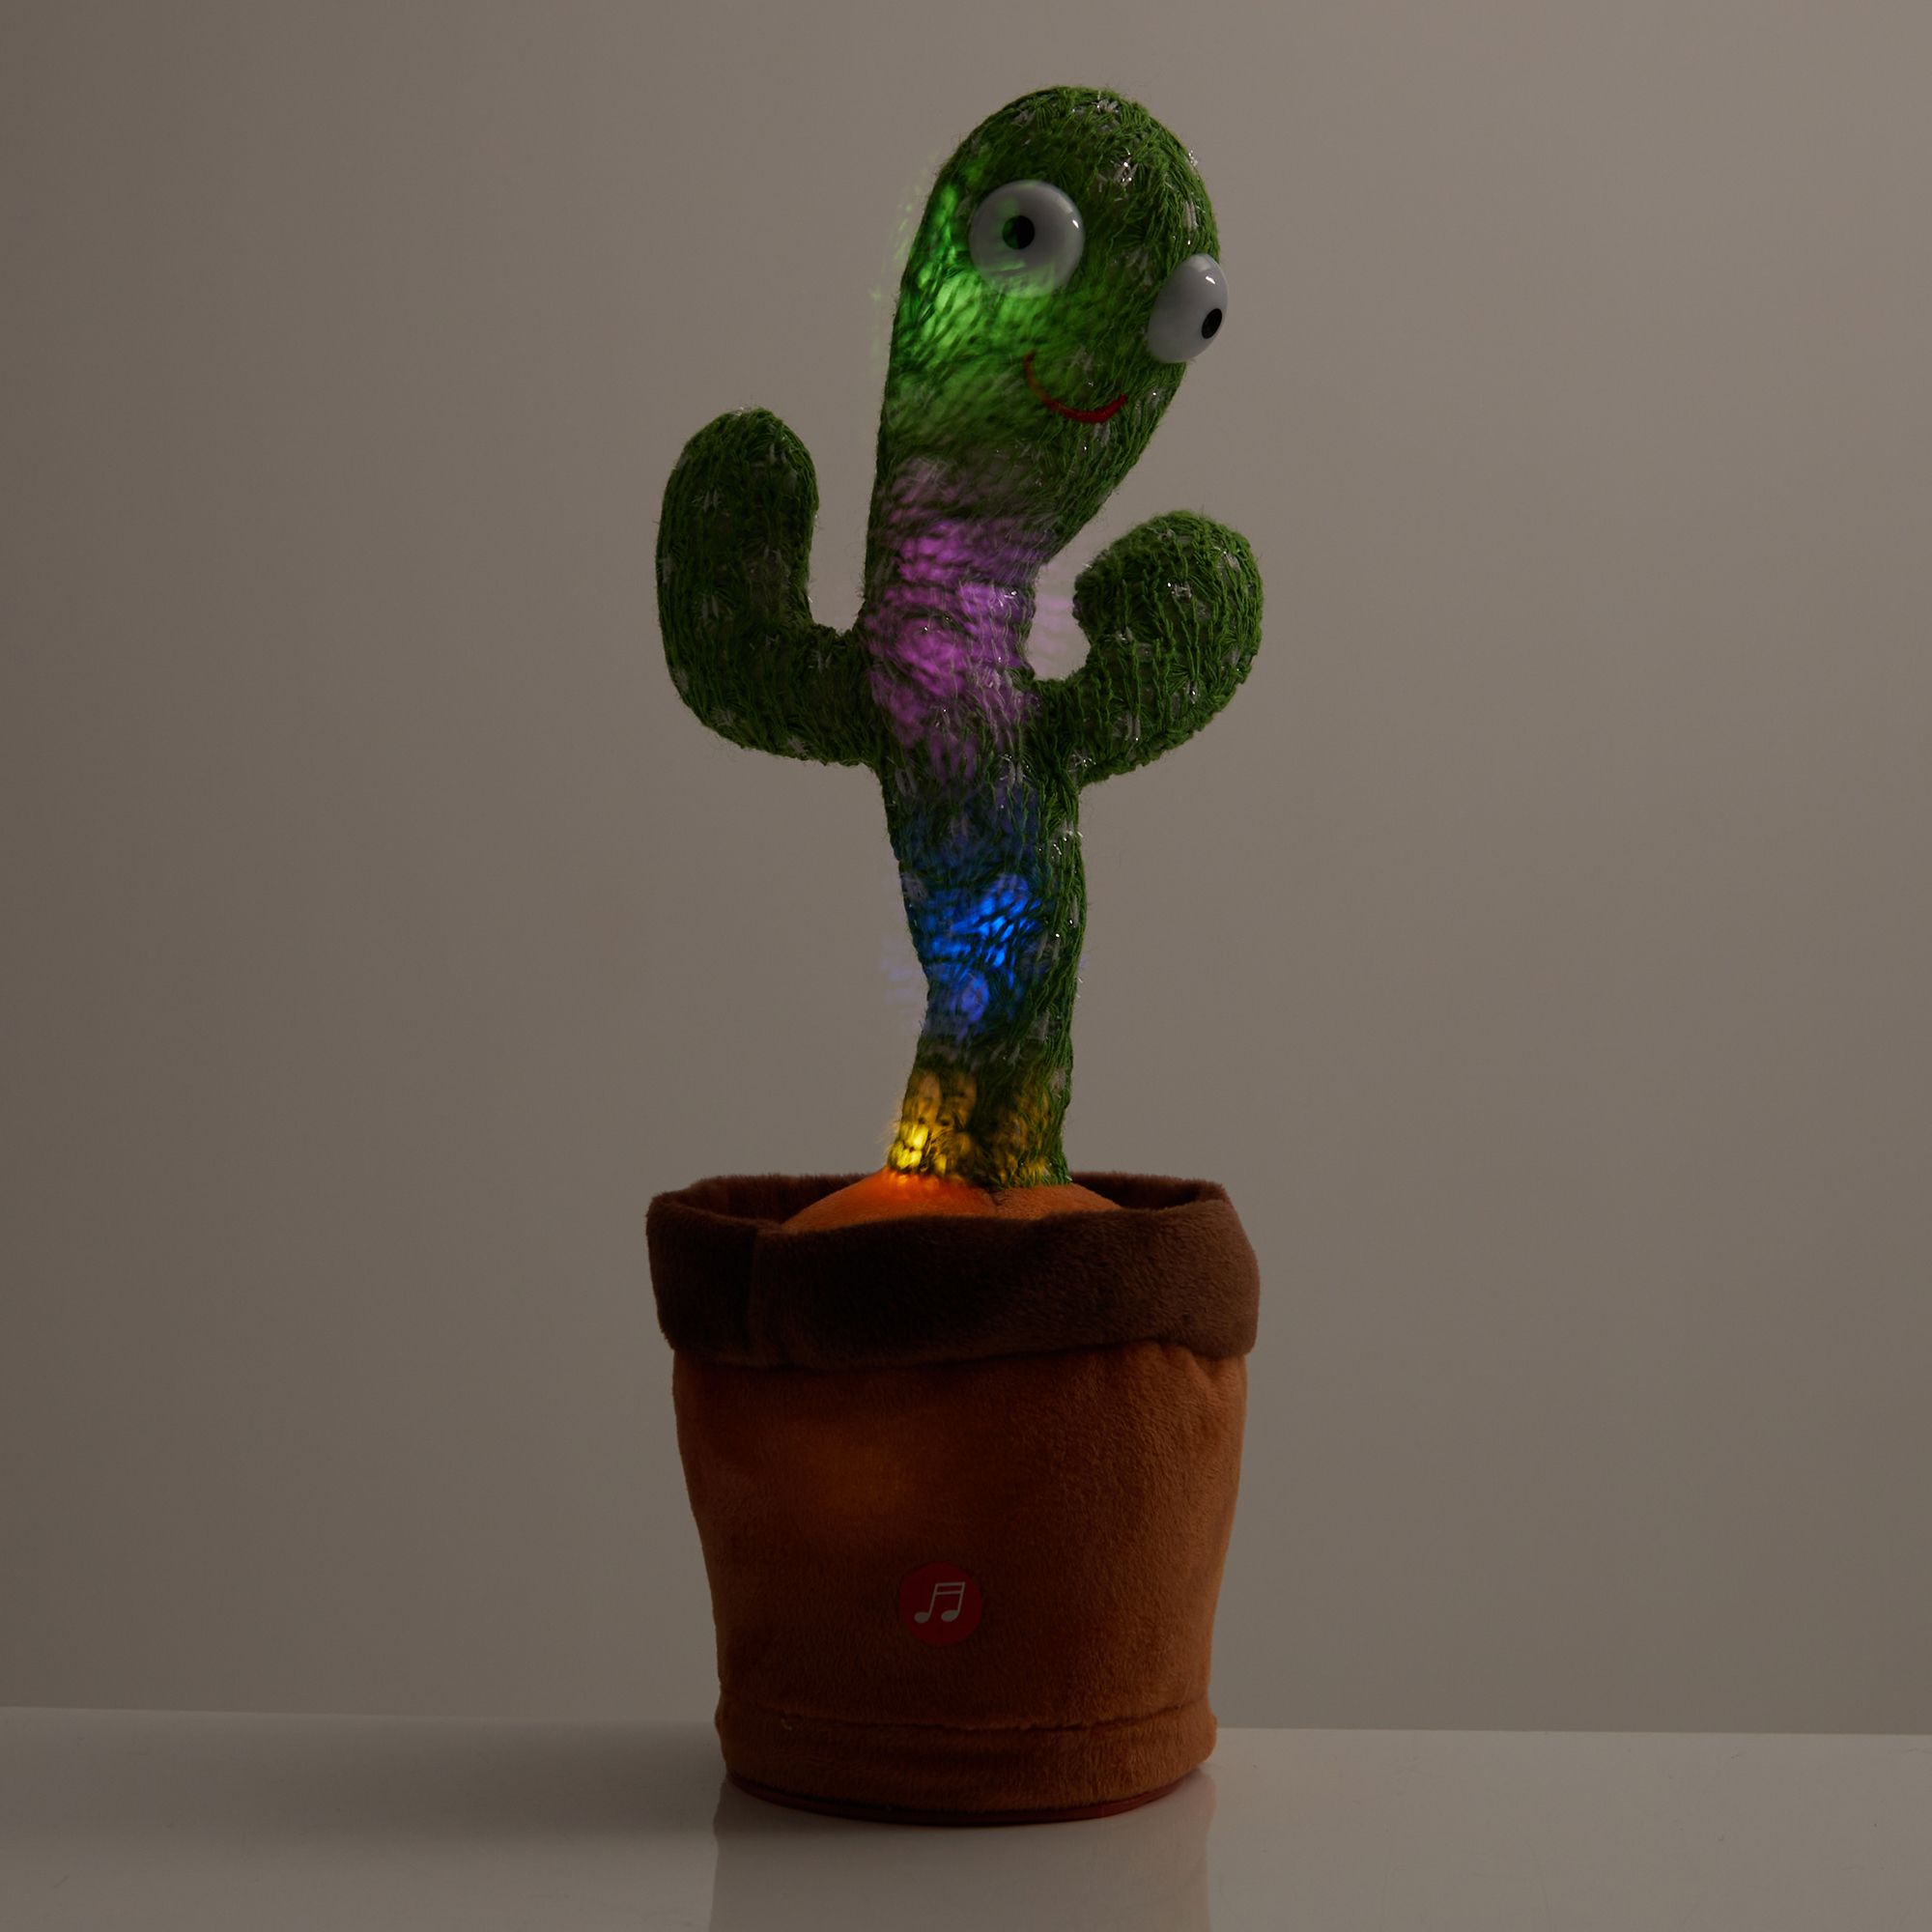 Tanzender Kaktus online kaufen bei youlino –